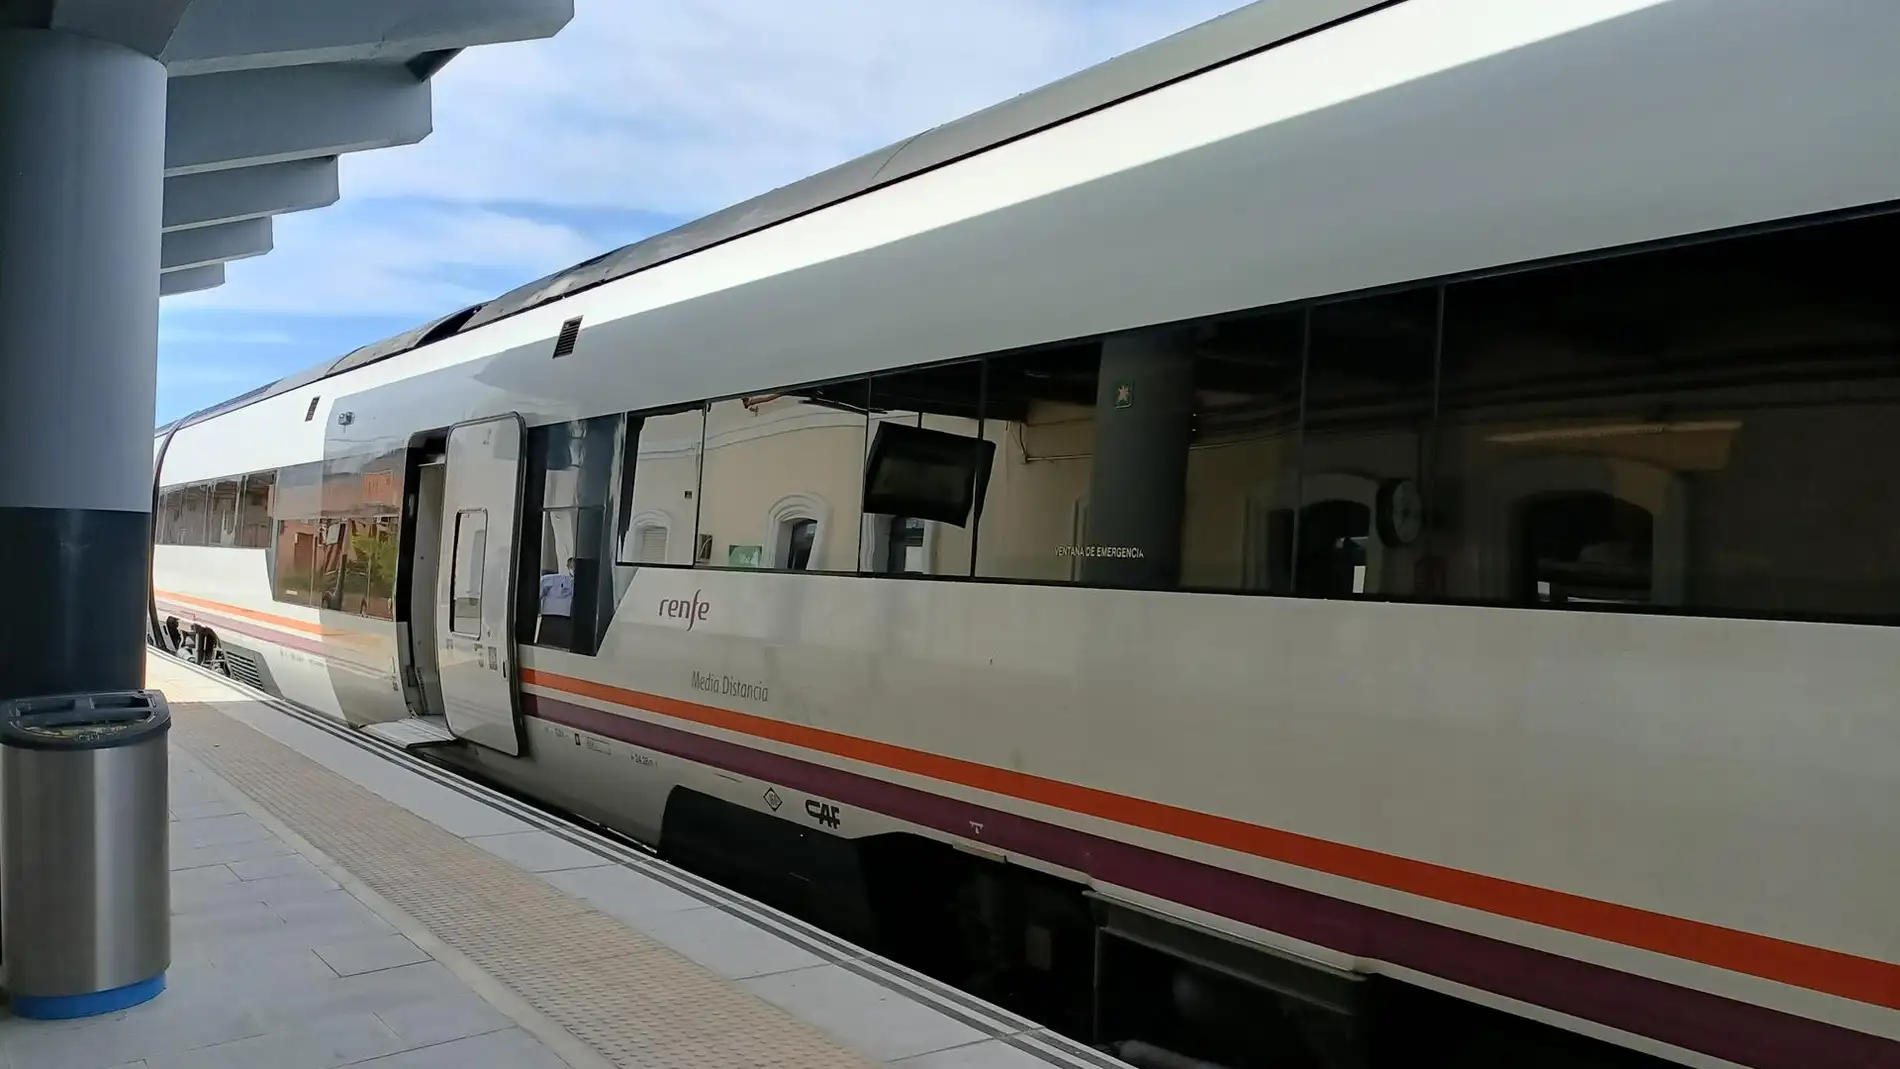 Tren de Renfe espera para salir en la estación de Pamplona/Iruña